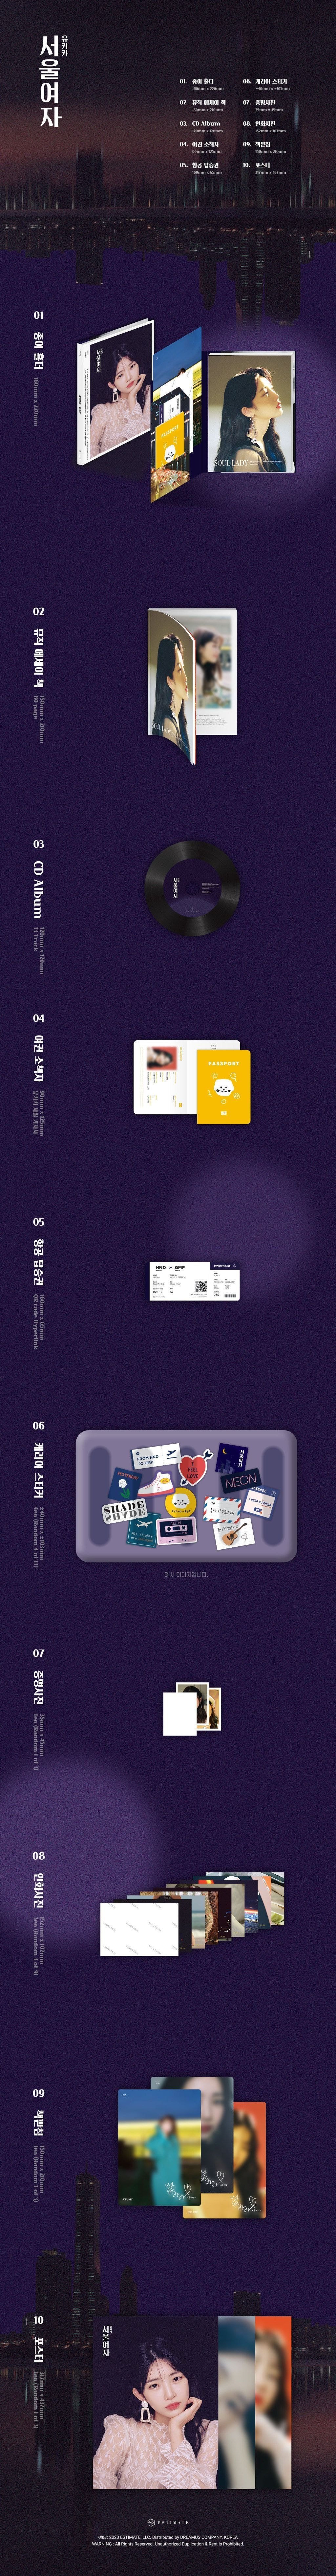 유키카 YUKIKA 앨범 언박싱 「서울여자(SOUL LADY)」 1st Album Unboxing!